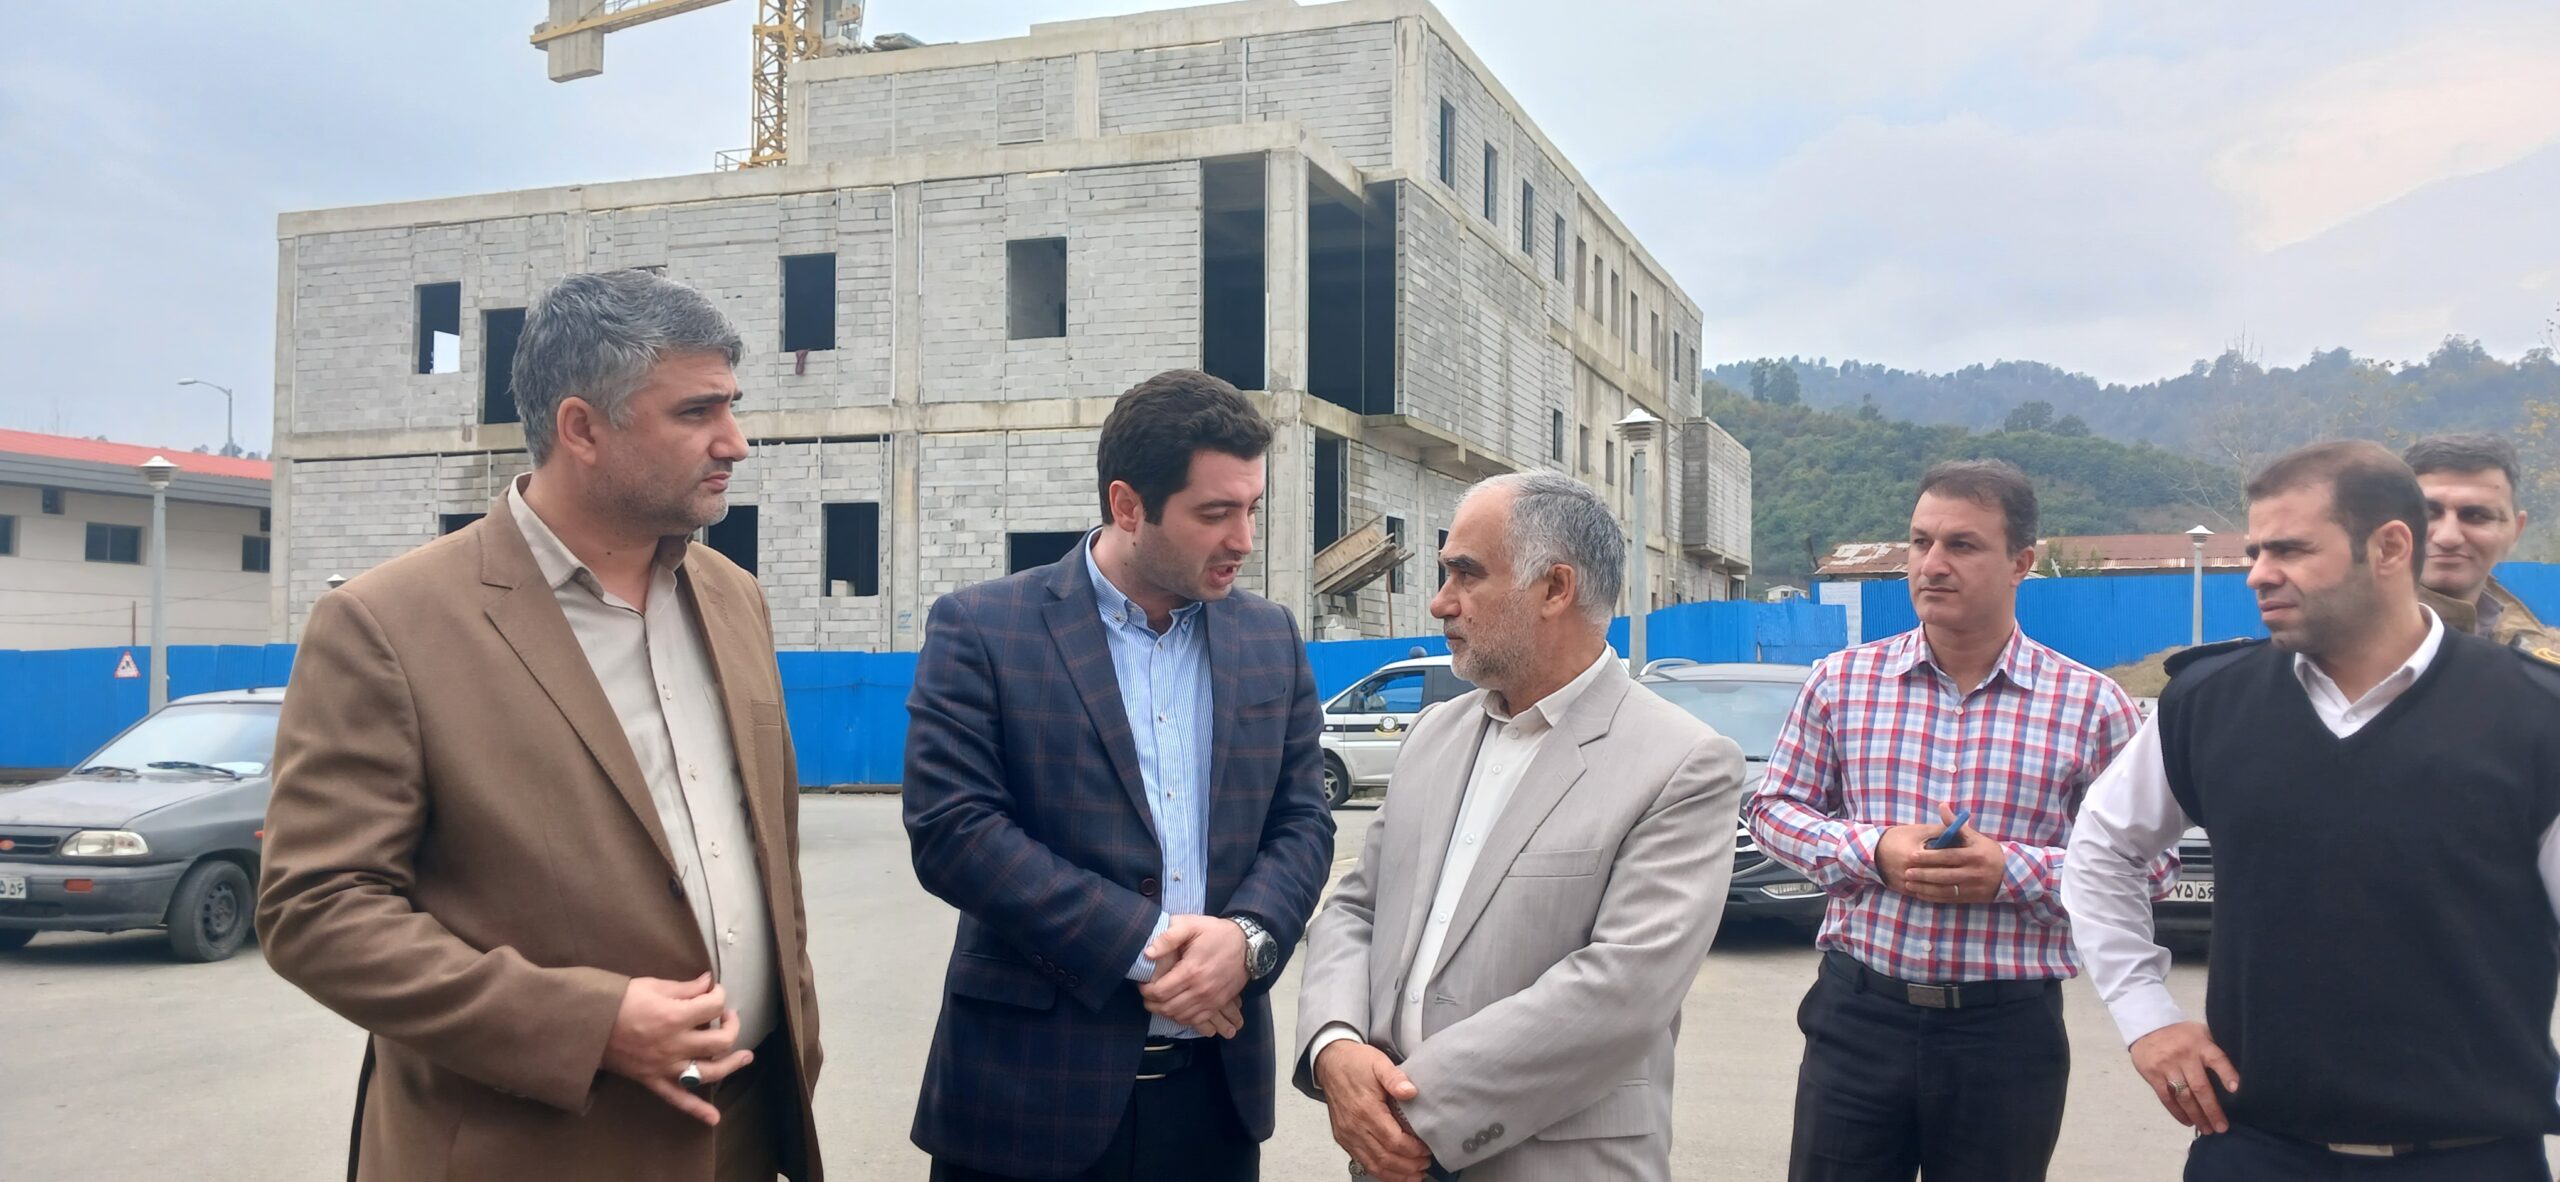 گزارش تصویری | بازدید سرپرست فرمانداری تالش از بیمارستان شهید نورانی